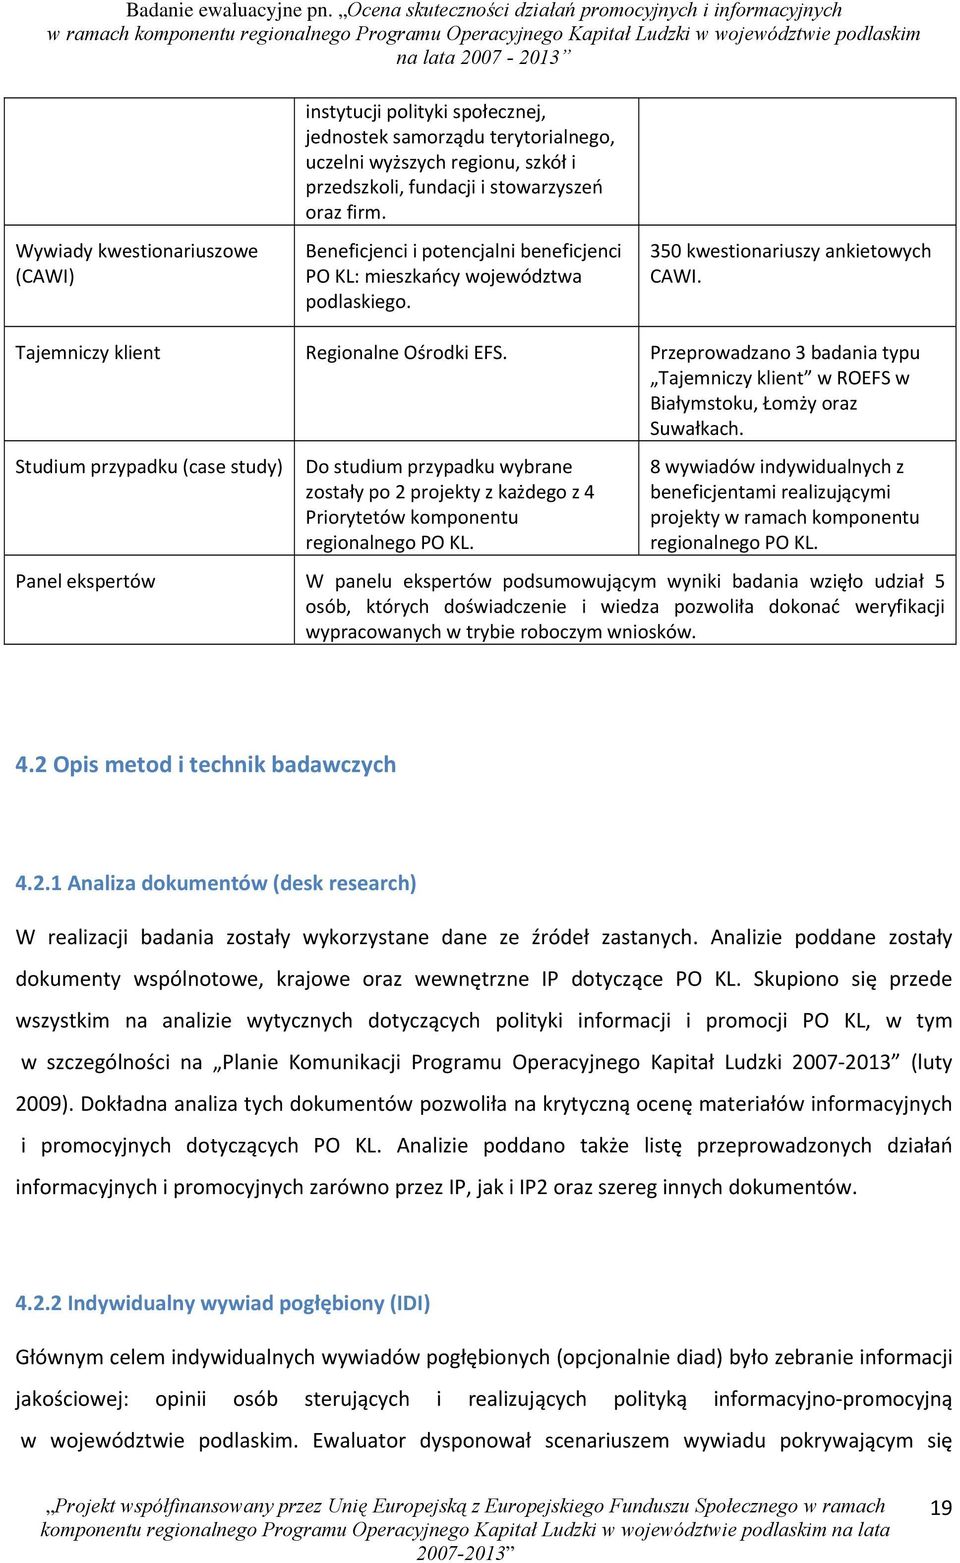 Przeprowadzano 3 badania typu Tajemniczy klient w ROEFS w Białymstoku, Łomży oraz Suwałkach.